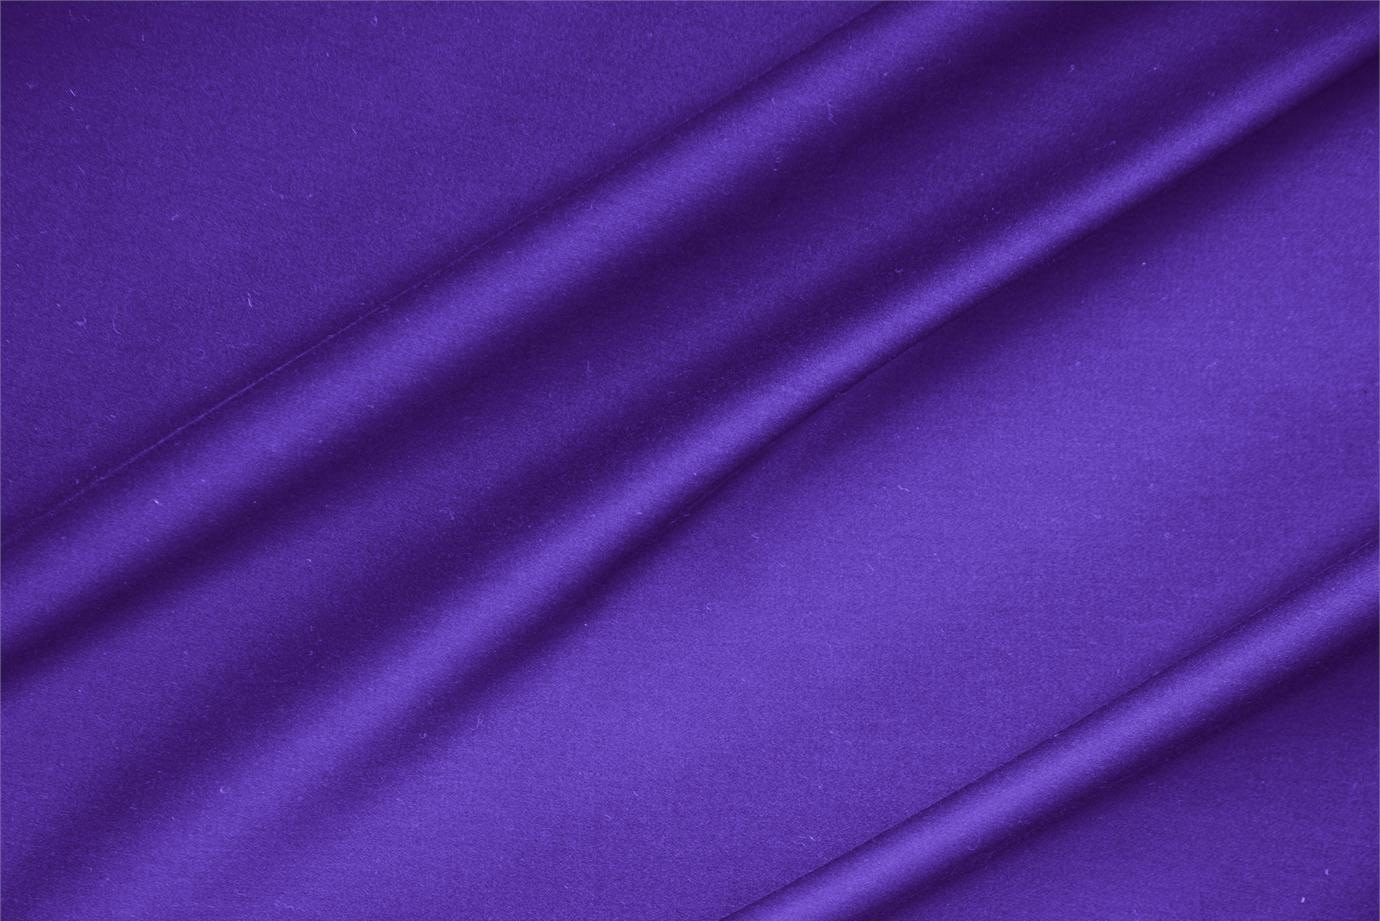 Tessuto Rasatello di Cotone Stretch Viola Iris in Cotone, Stretch per abbigliamento